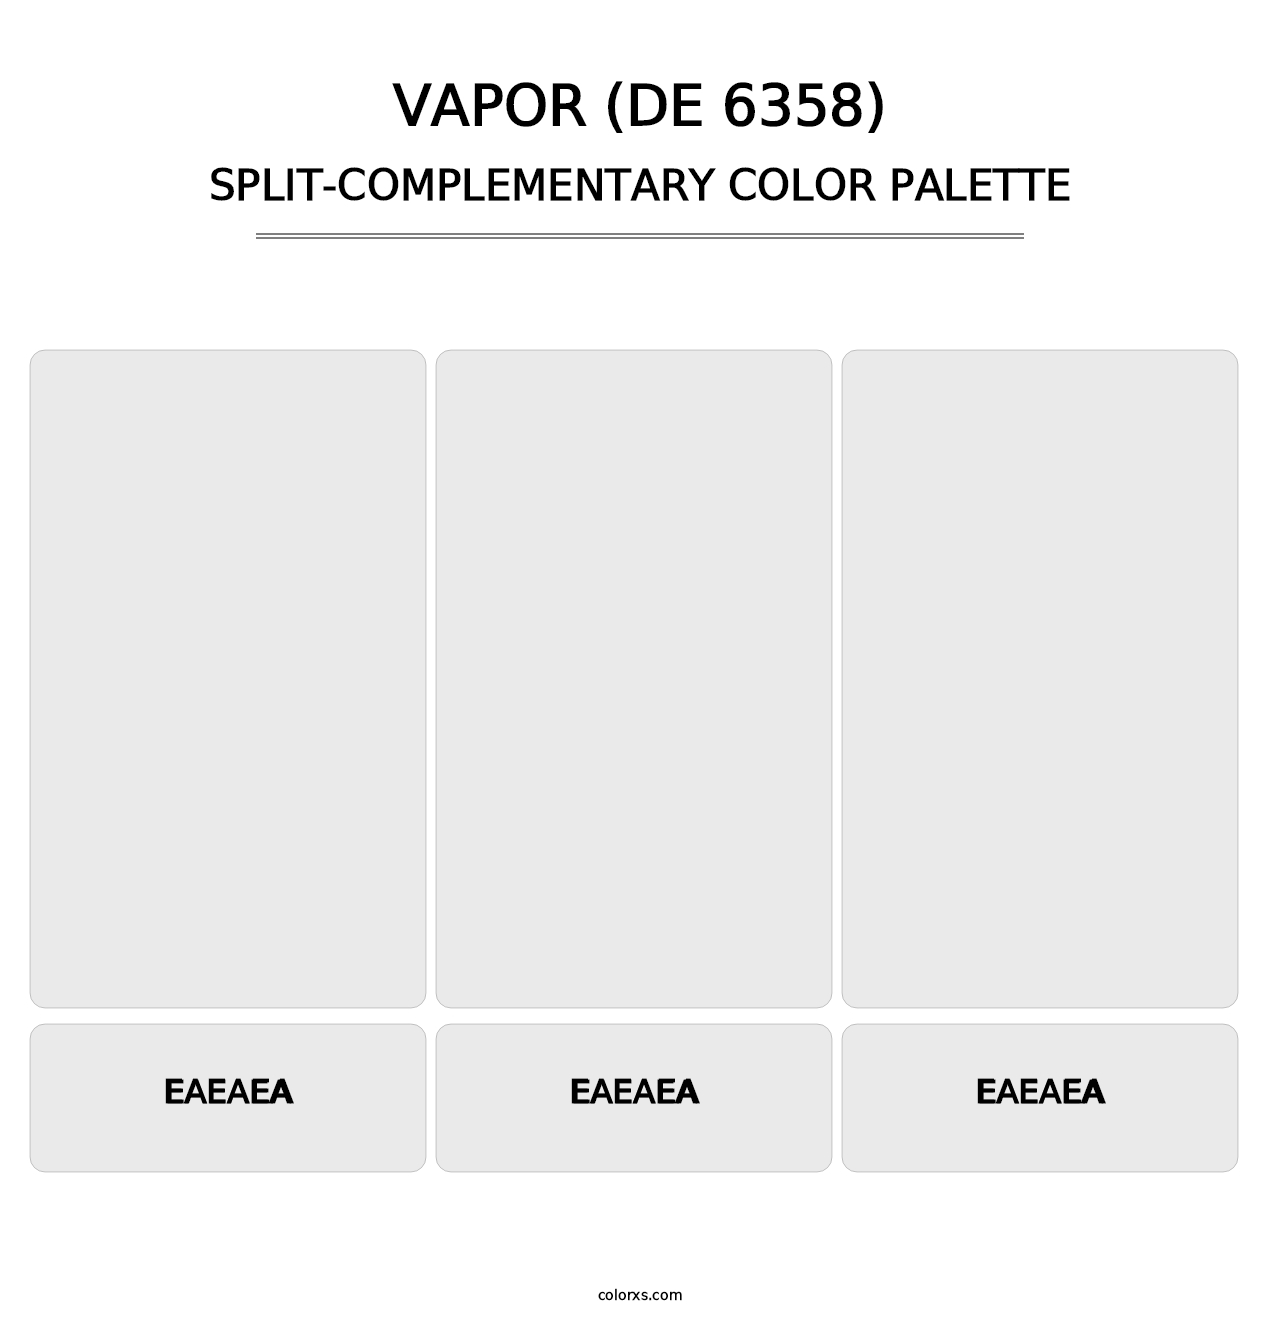 Vapor (DE 6358) - Split-Complementary Color Palette